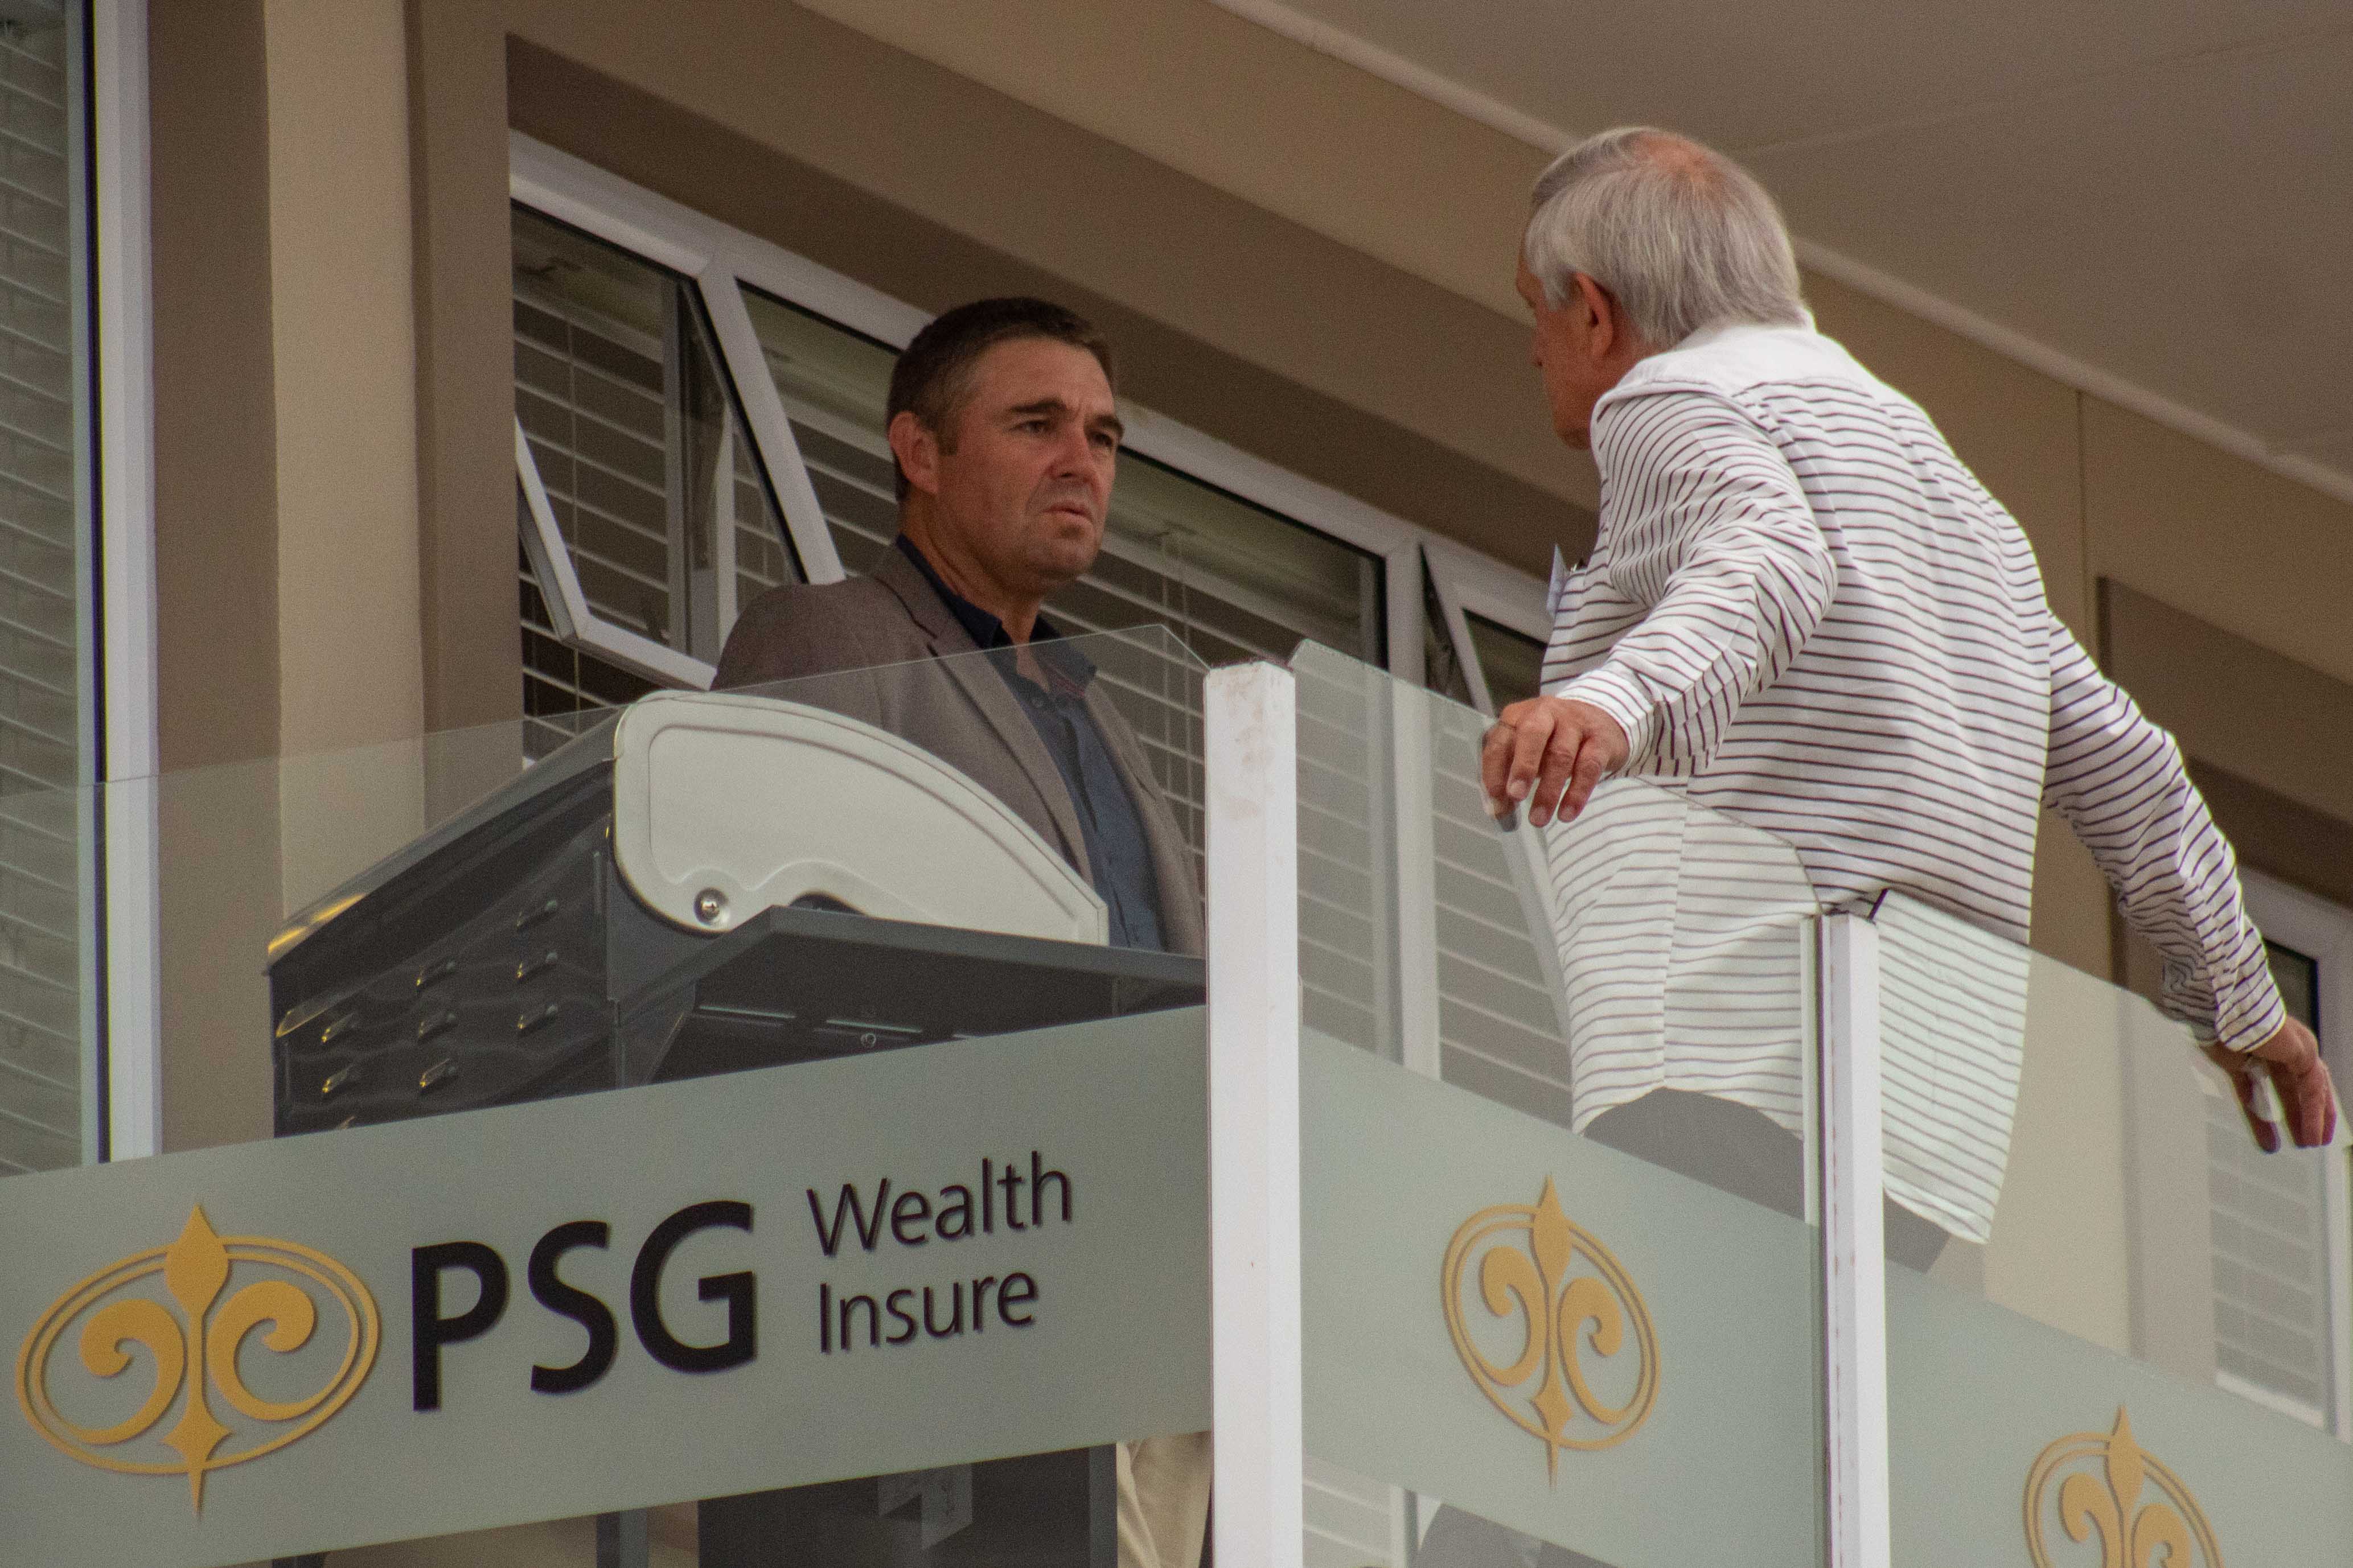 PSG Wealth & Insure opens in Plett  KnysnaPlett Herald